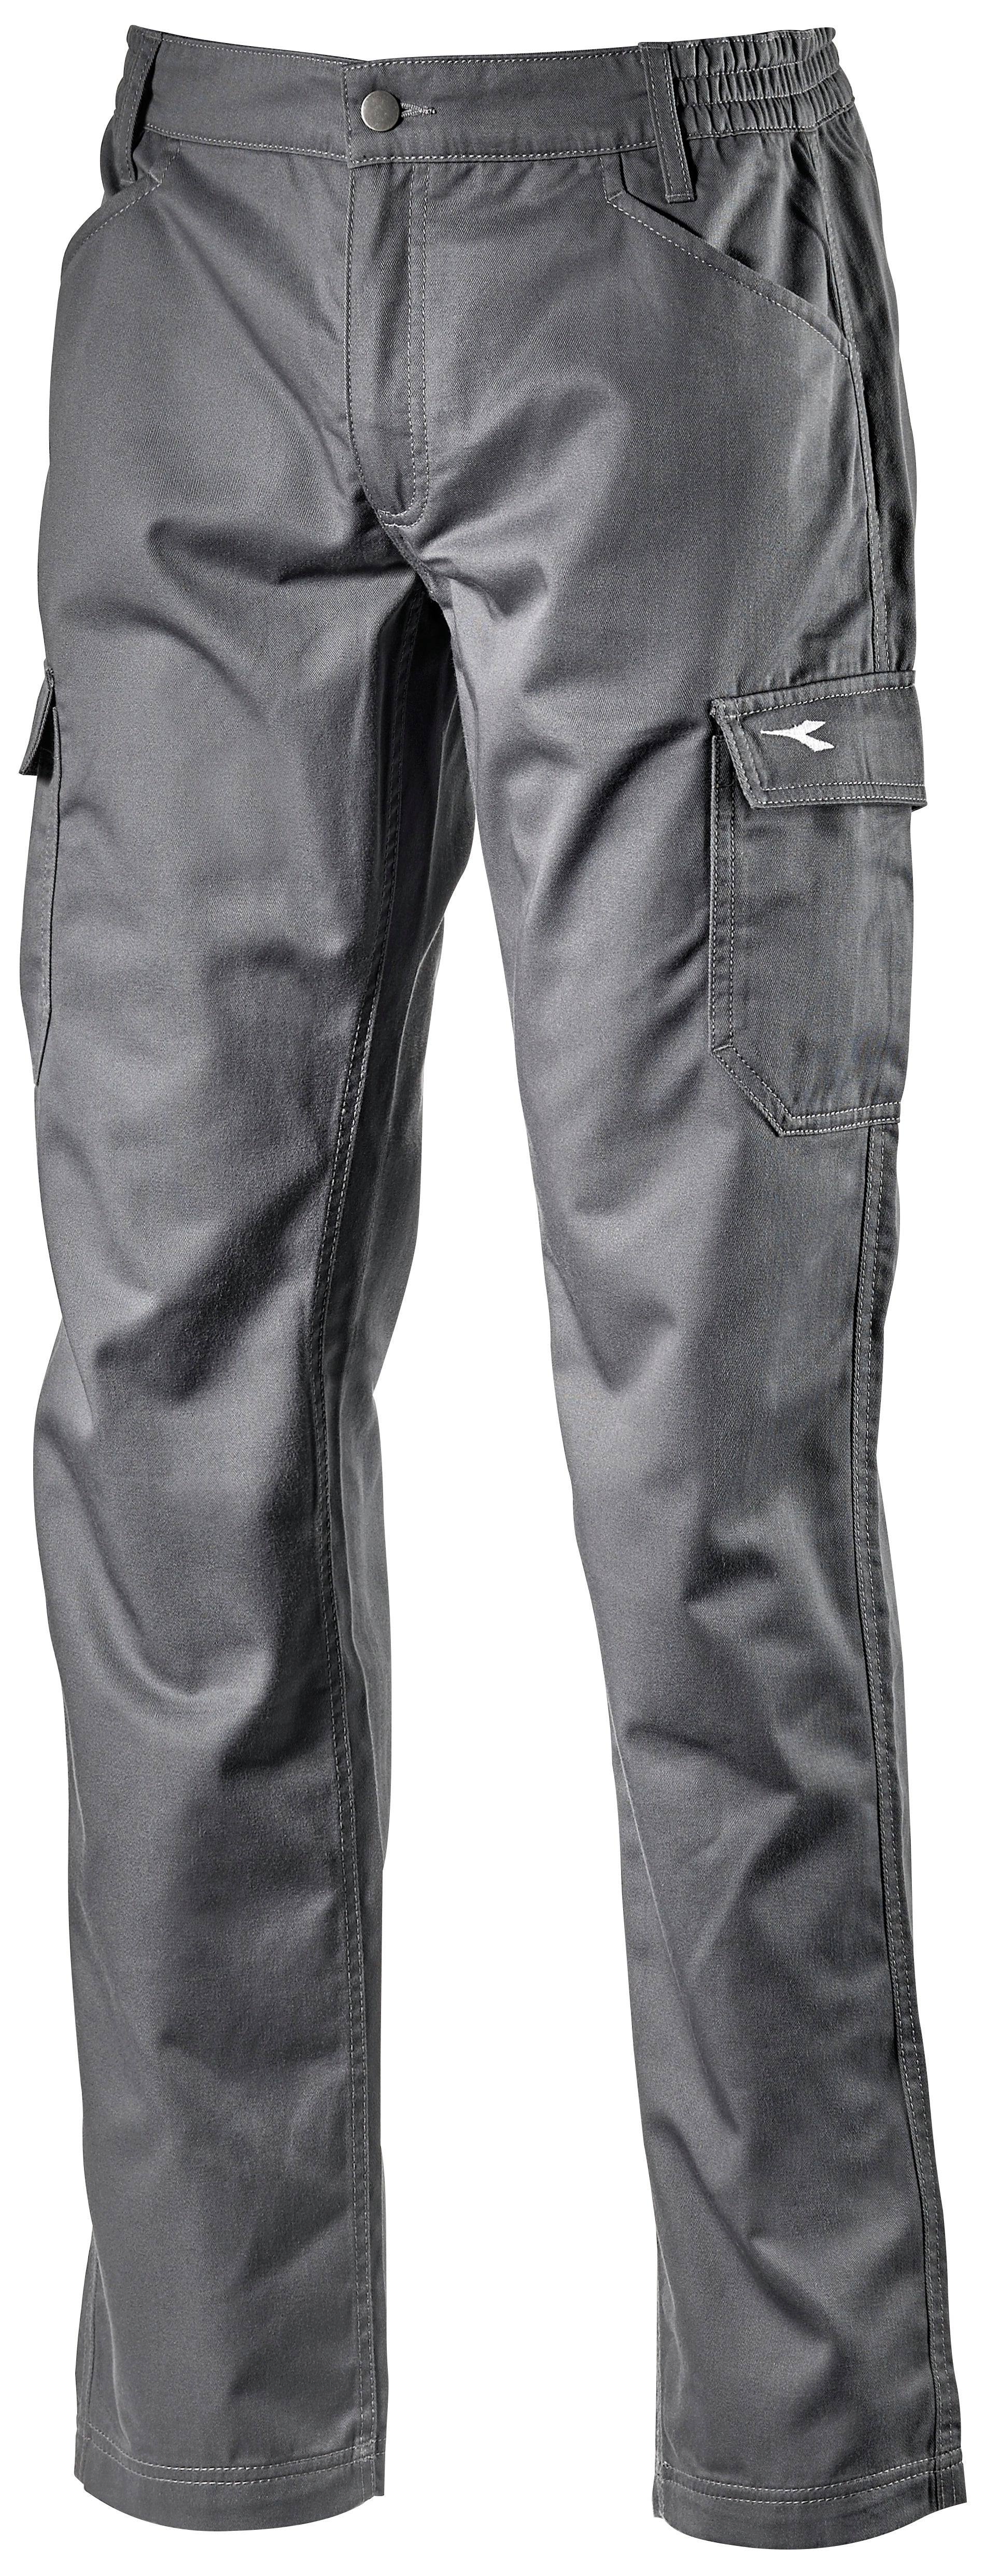 Diadora pantalone level cargo col. grigio mis.  m - Diadora